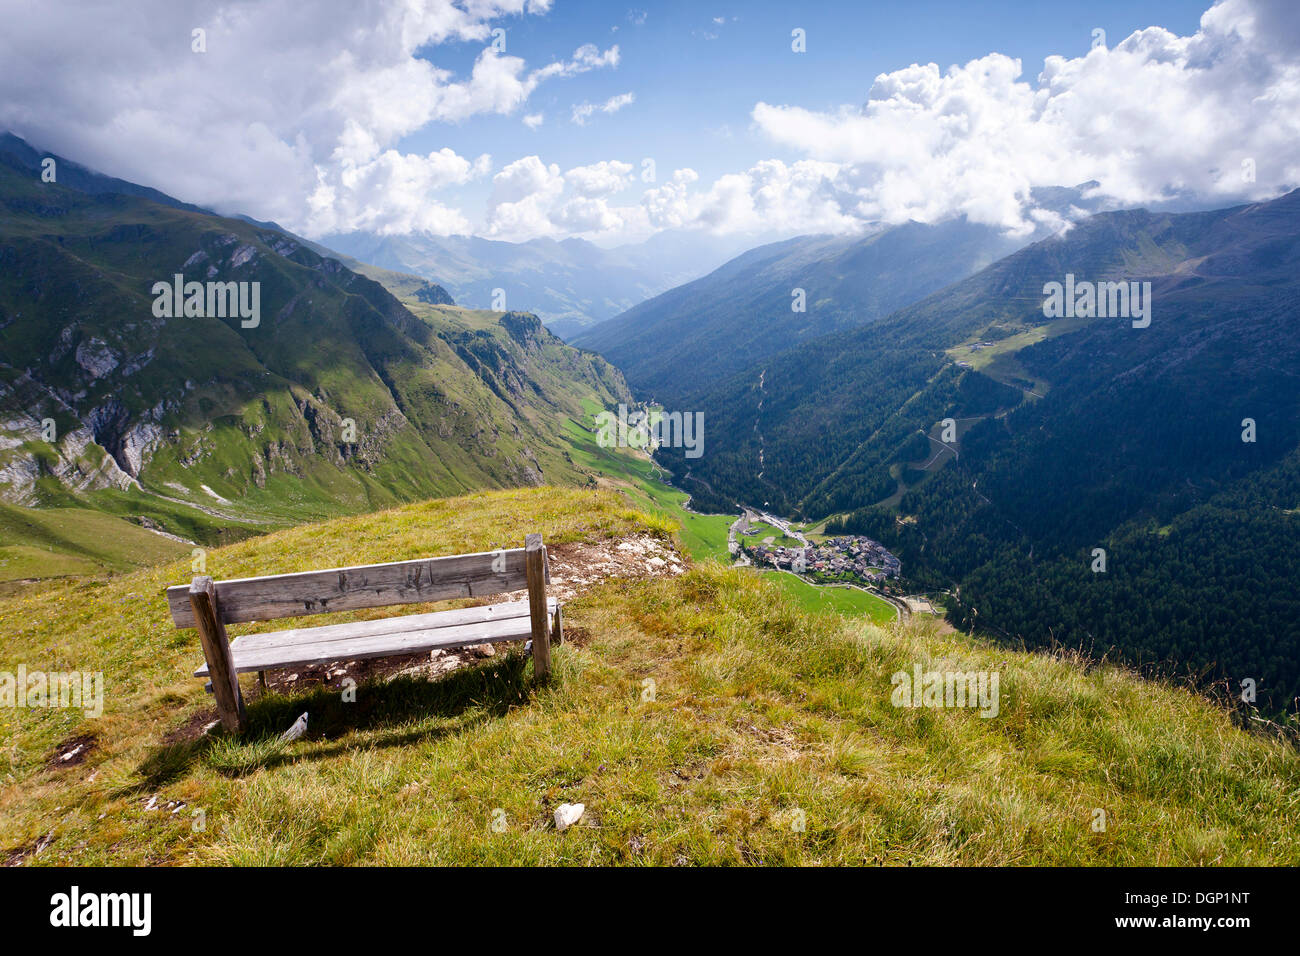 Visualizzare durante la discesa dalla montagna Seelenkogel nella valle Pfelderertal sopra il villaggio di Plan, Alto Adige, Italia Foto Stock